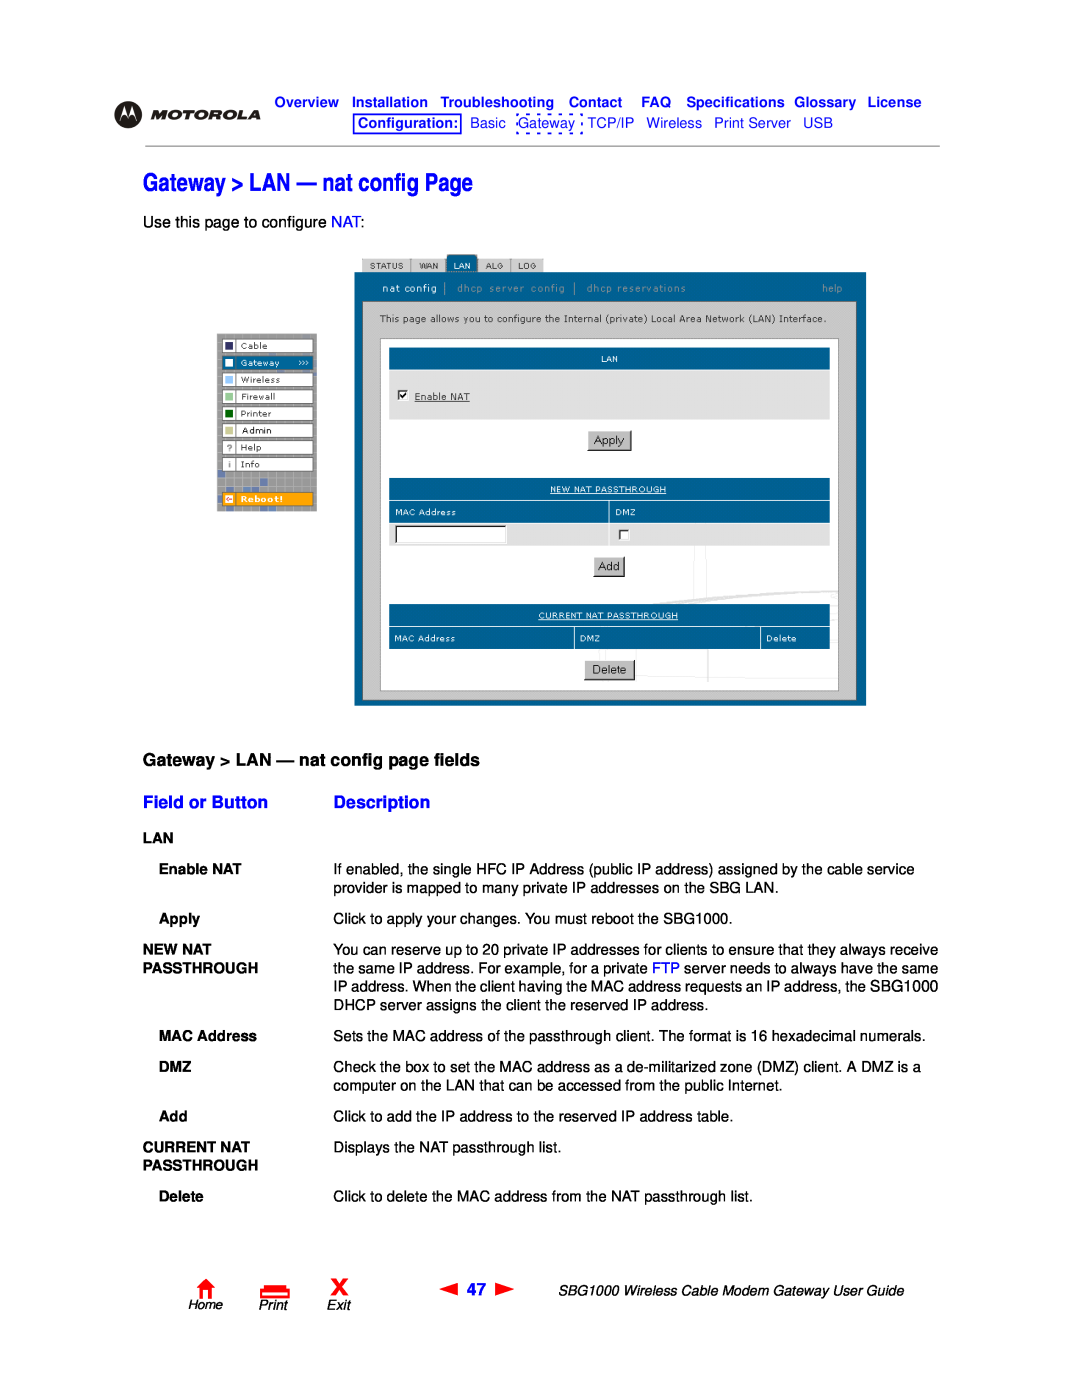 Motorola SBG1000 manual Gateway LAN - nat config Page, Gateway LAN - nat config page fields, Field or Button, Description 